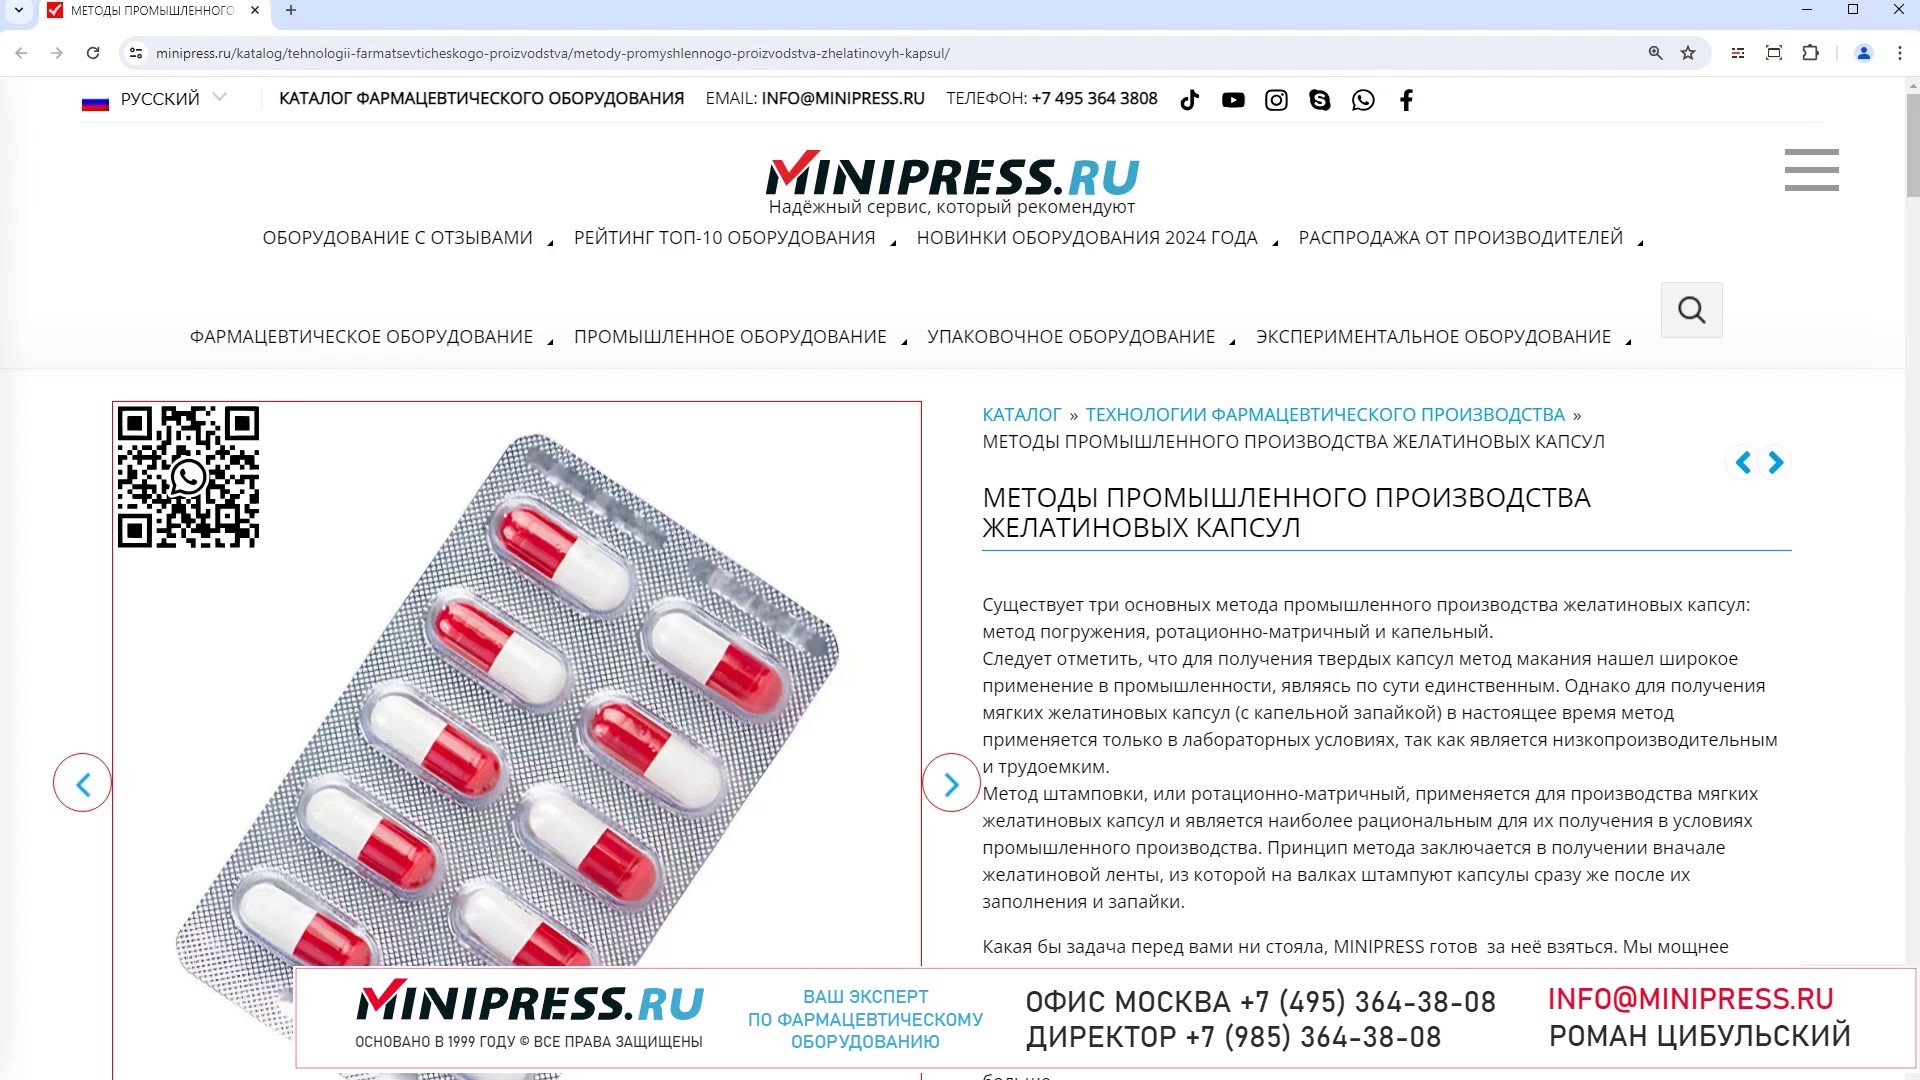 Minipress.ru Методы промышленного производства желатиновых капсул